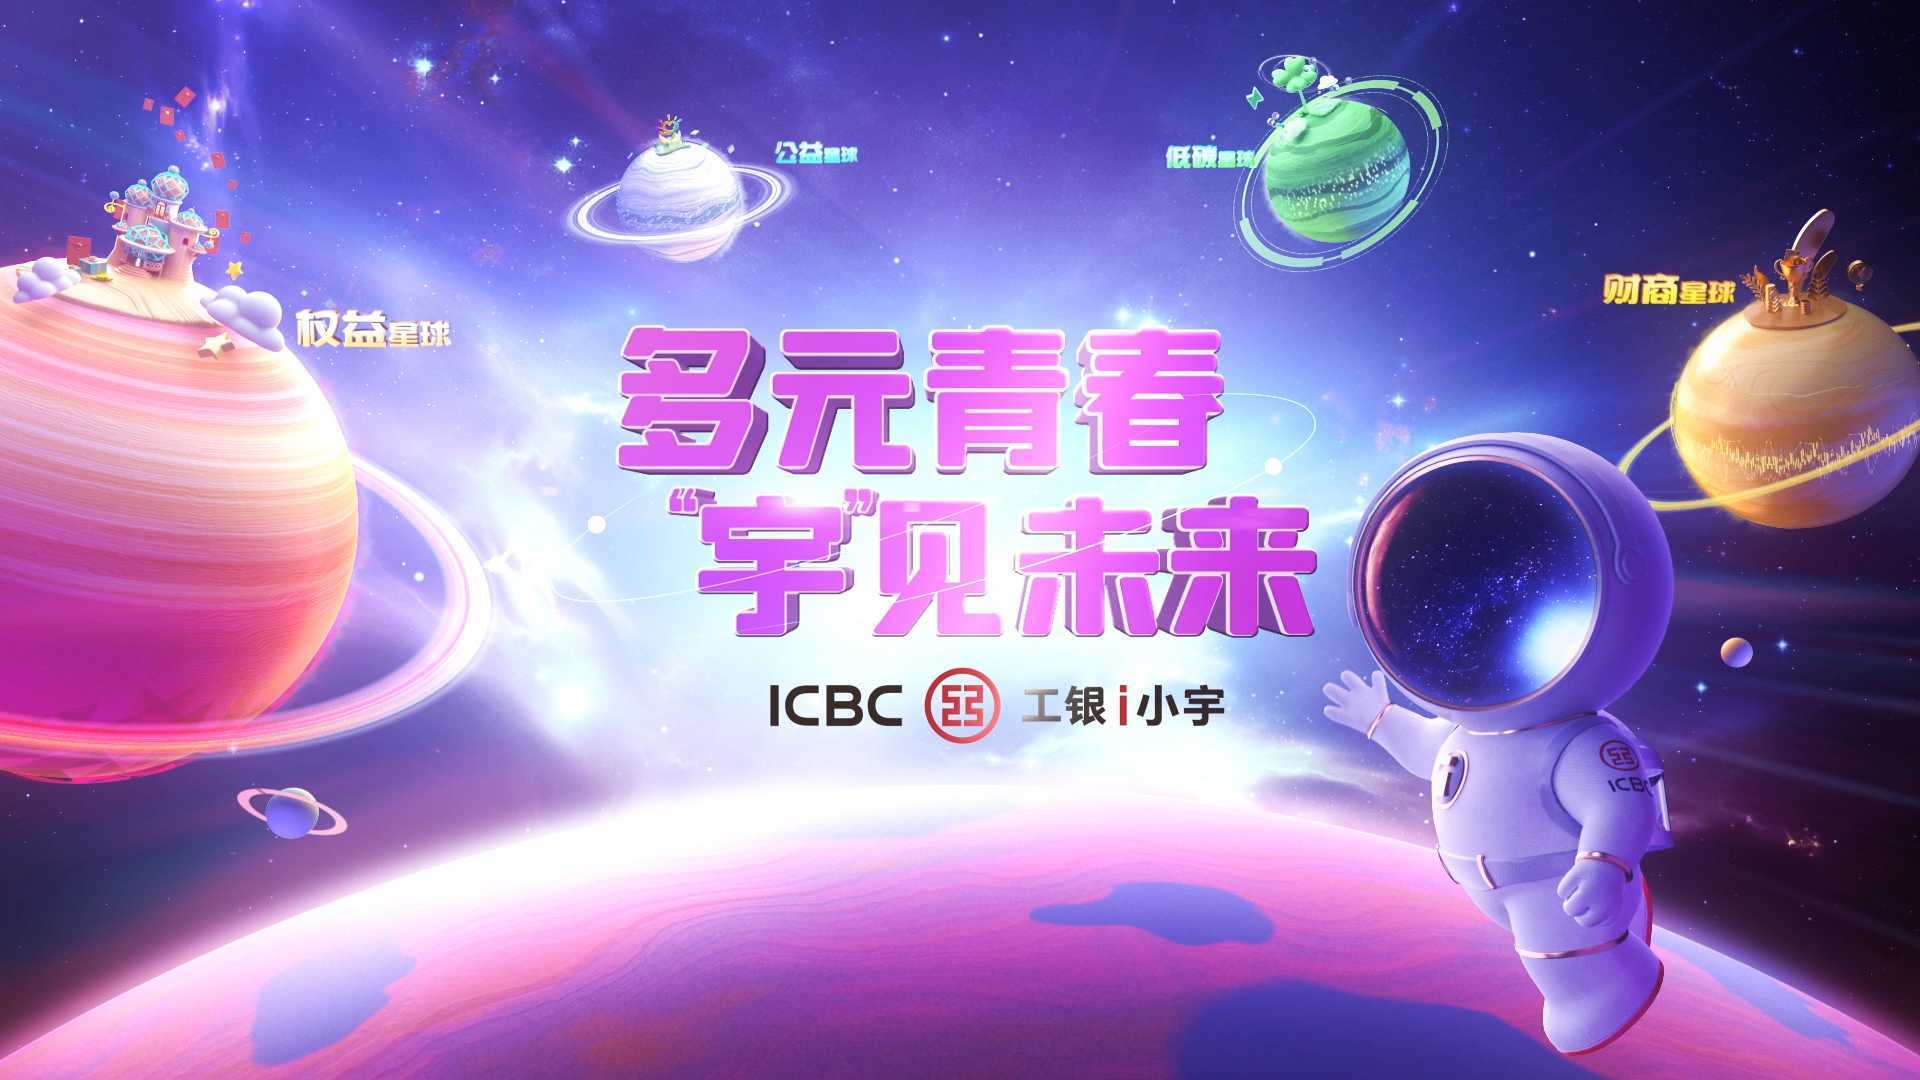 《多元青春 宇见未来》中国工商银行IP I小宇广告片